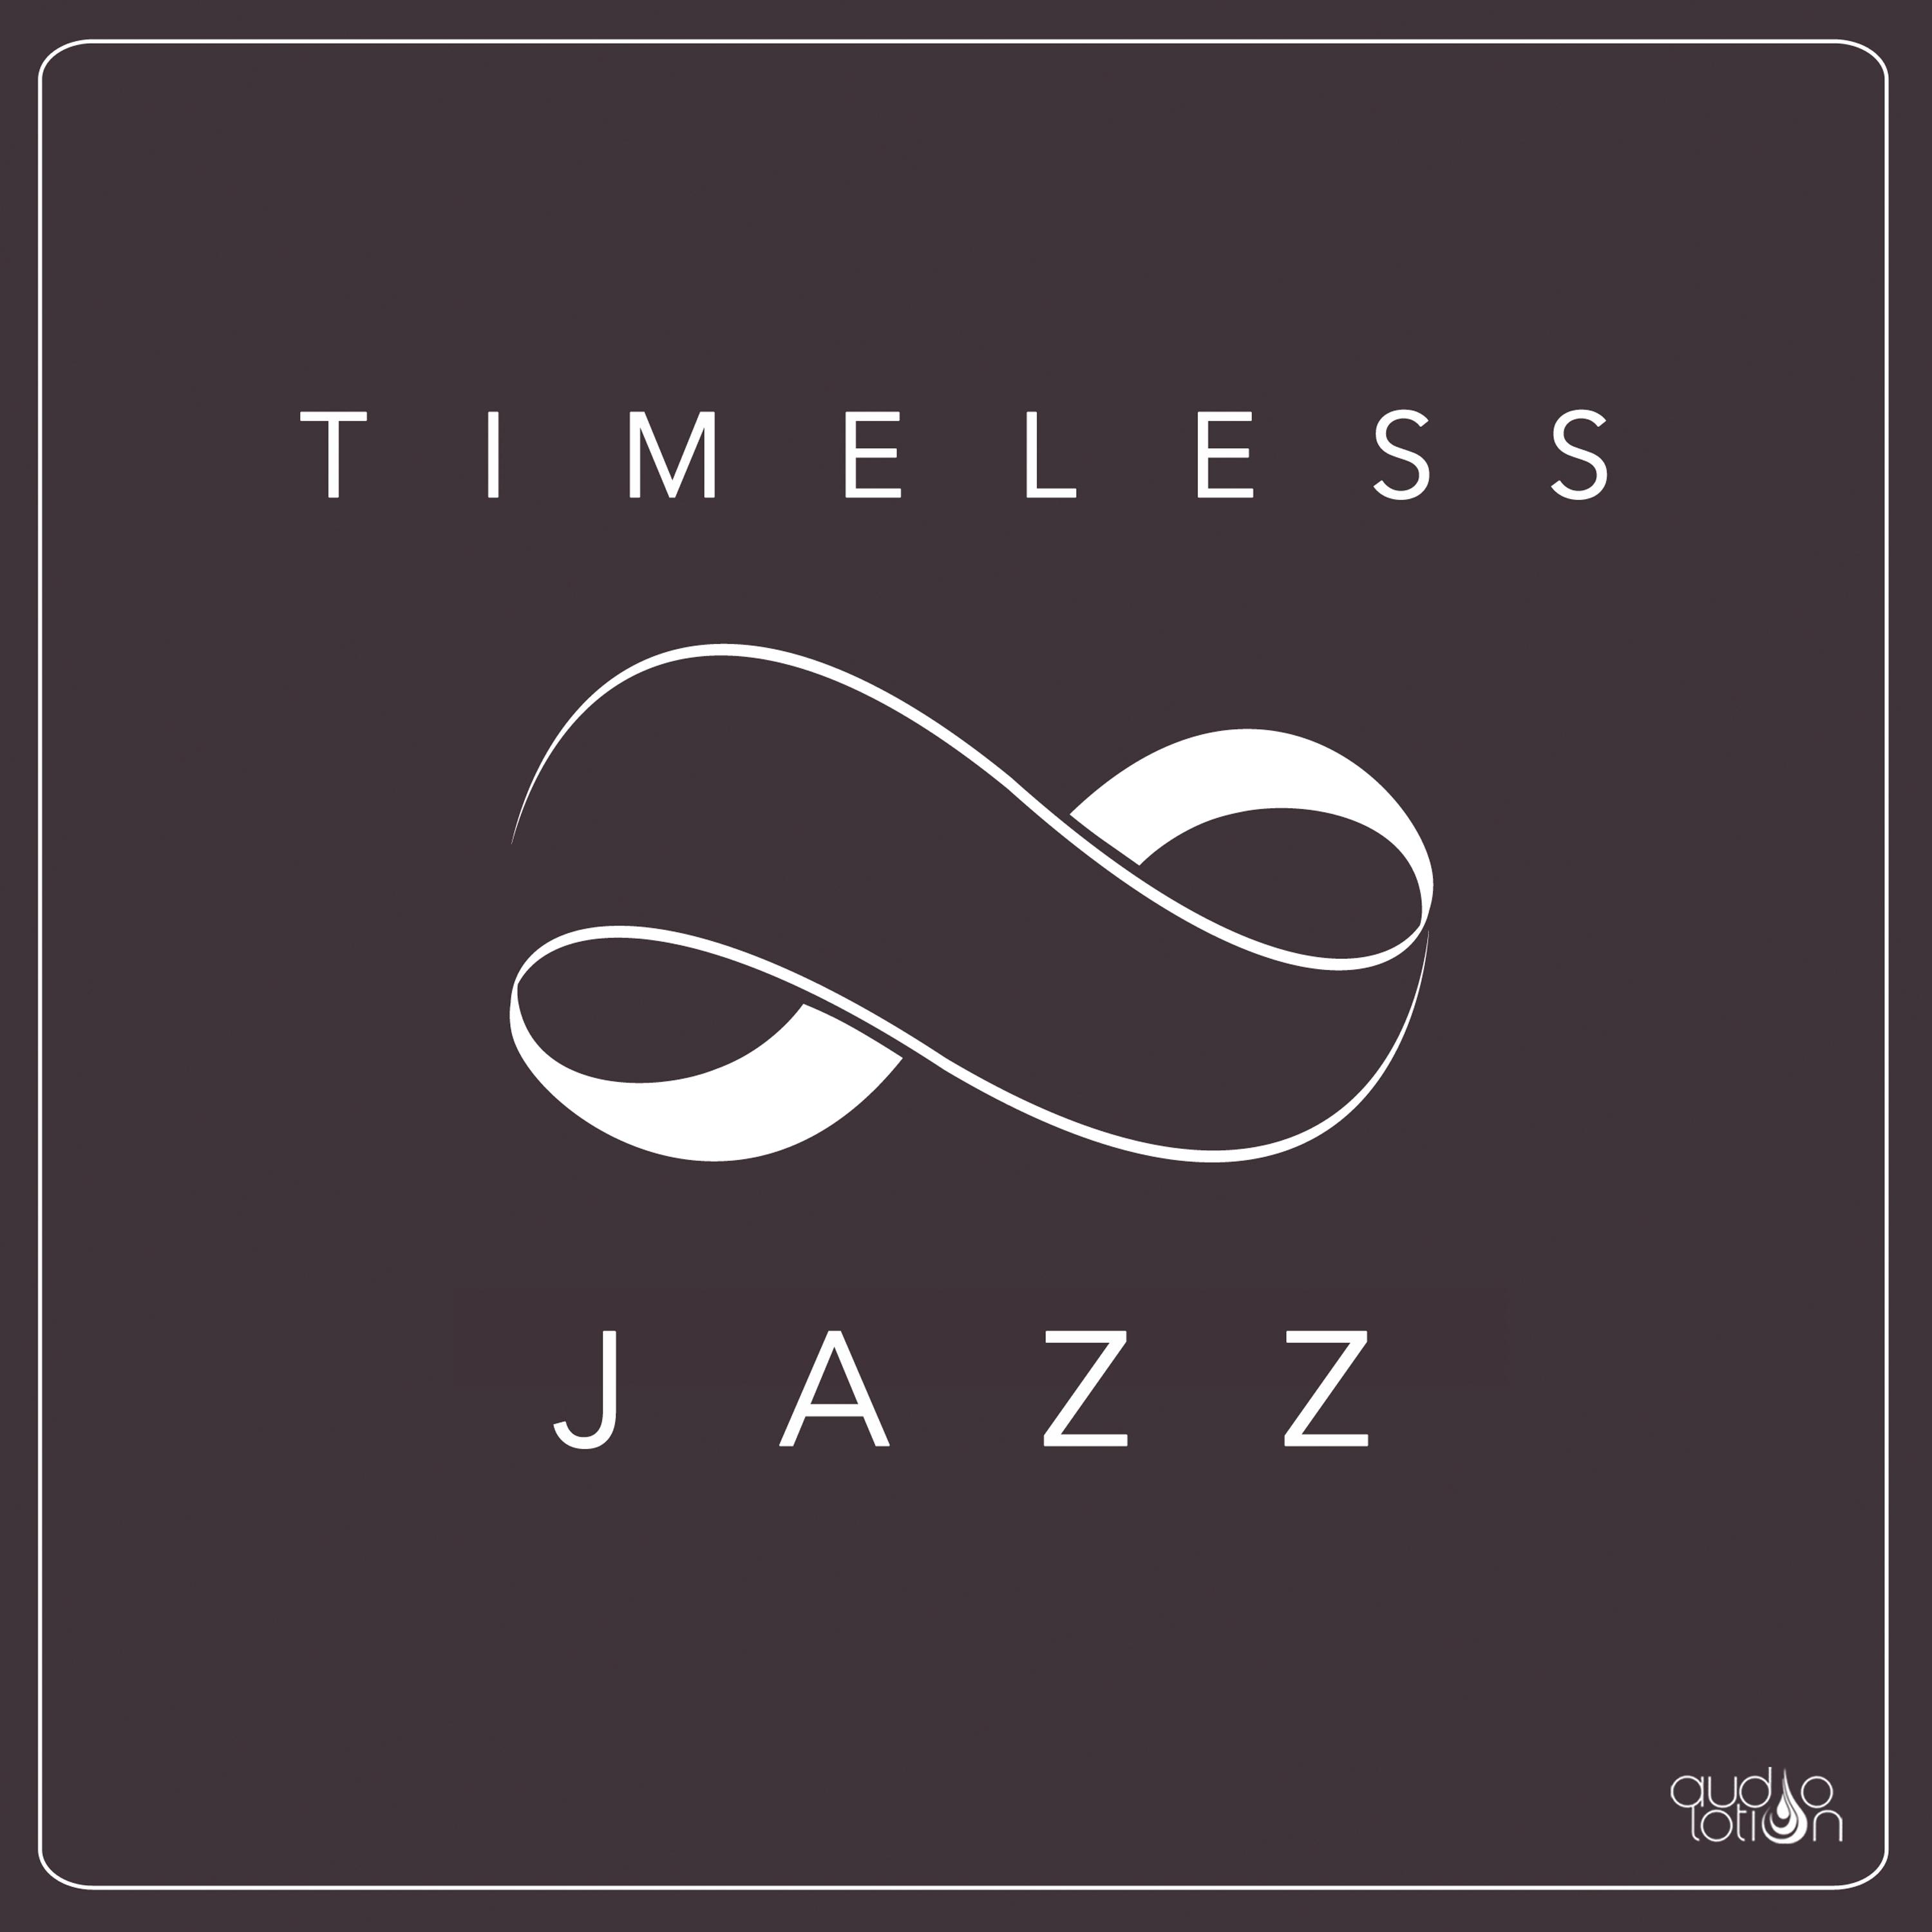 Timeless Jazz